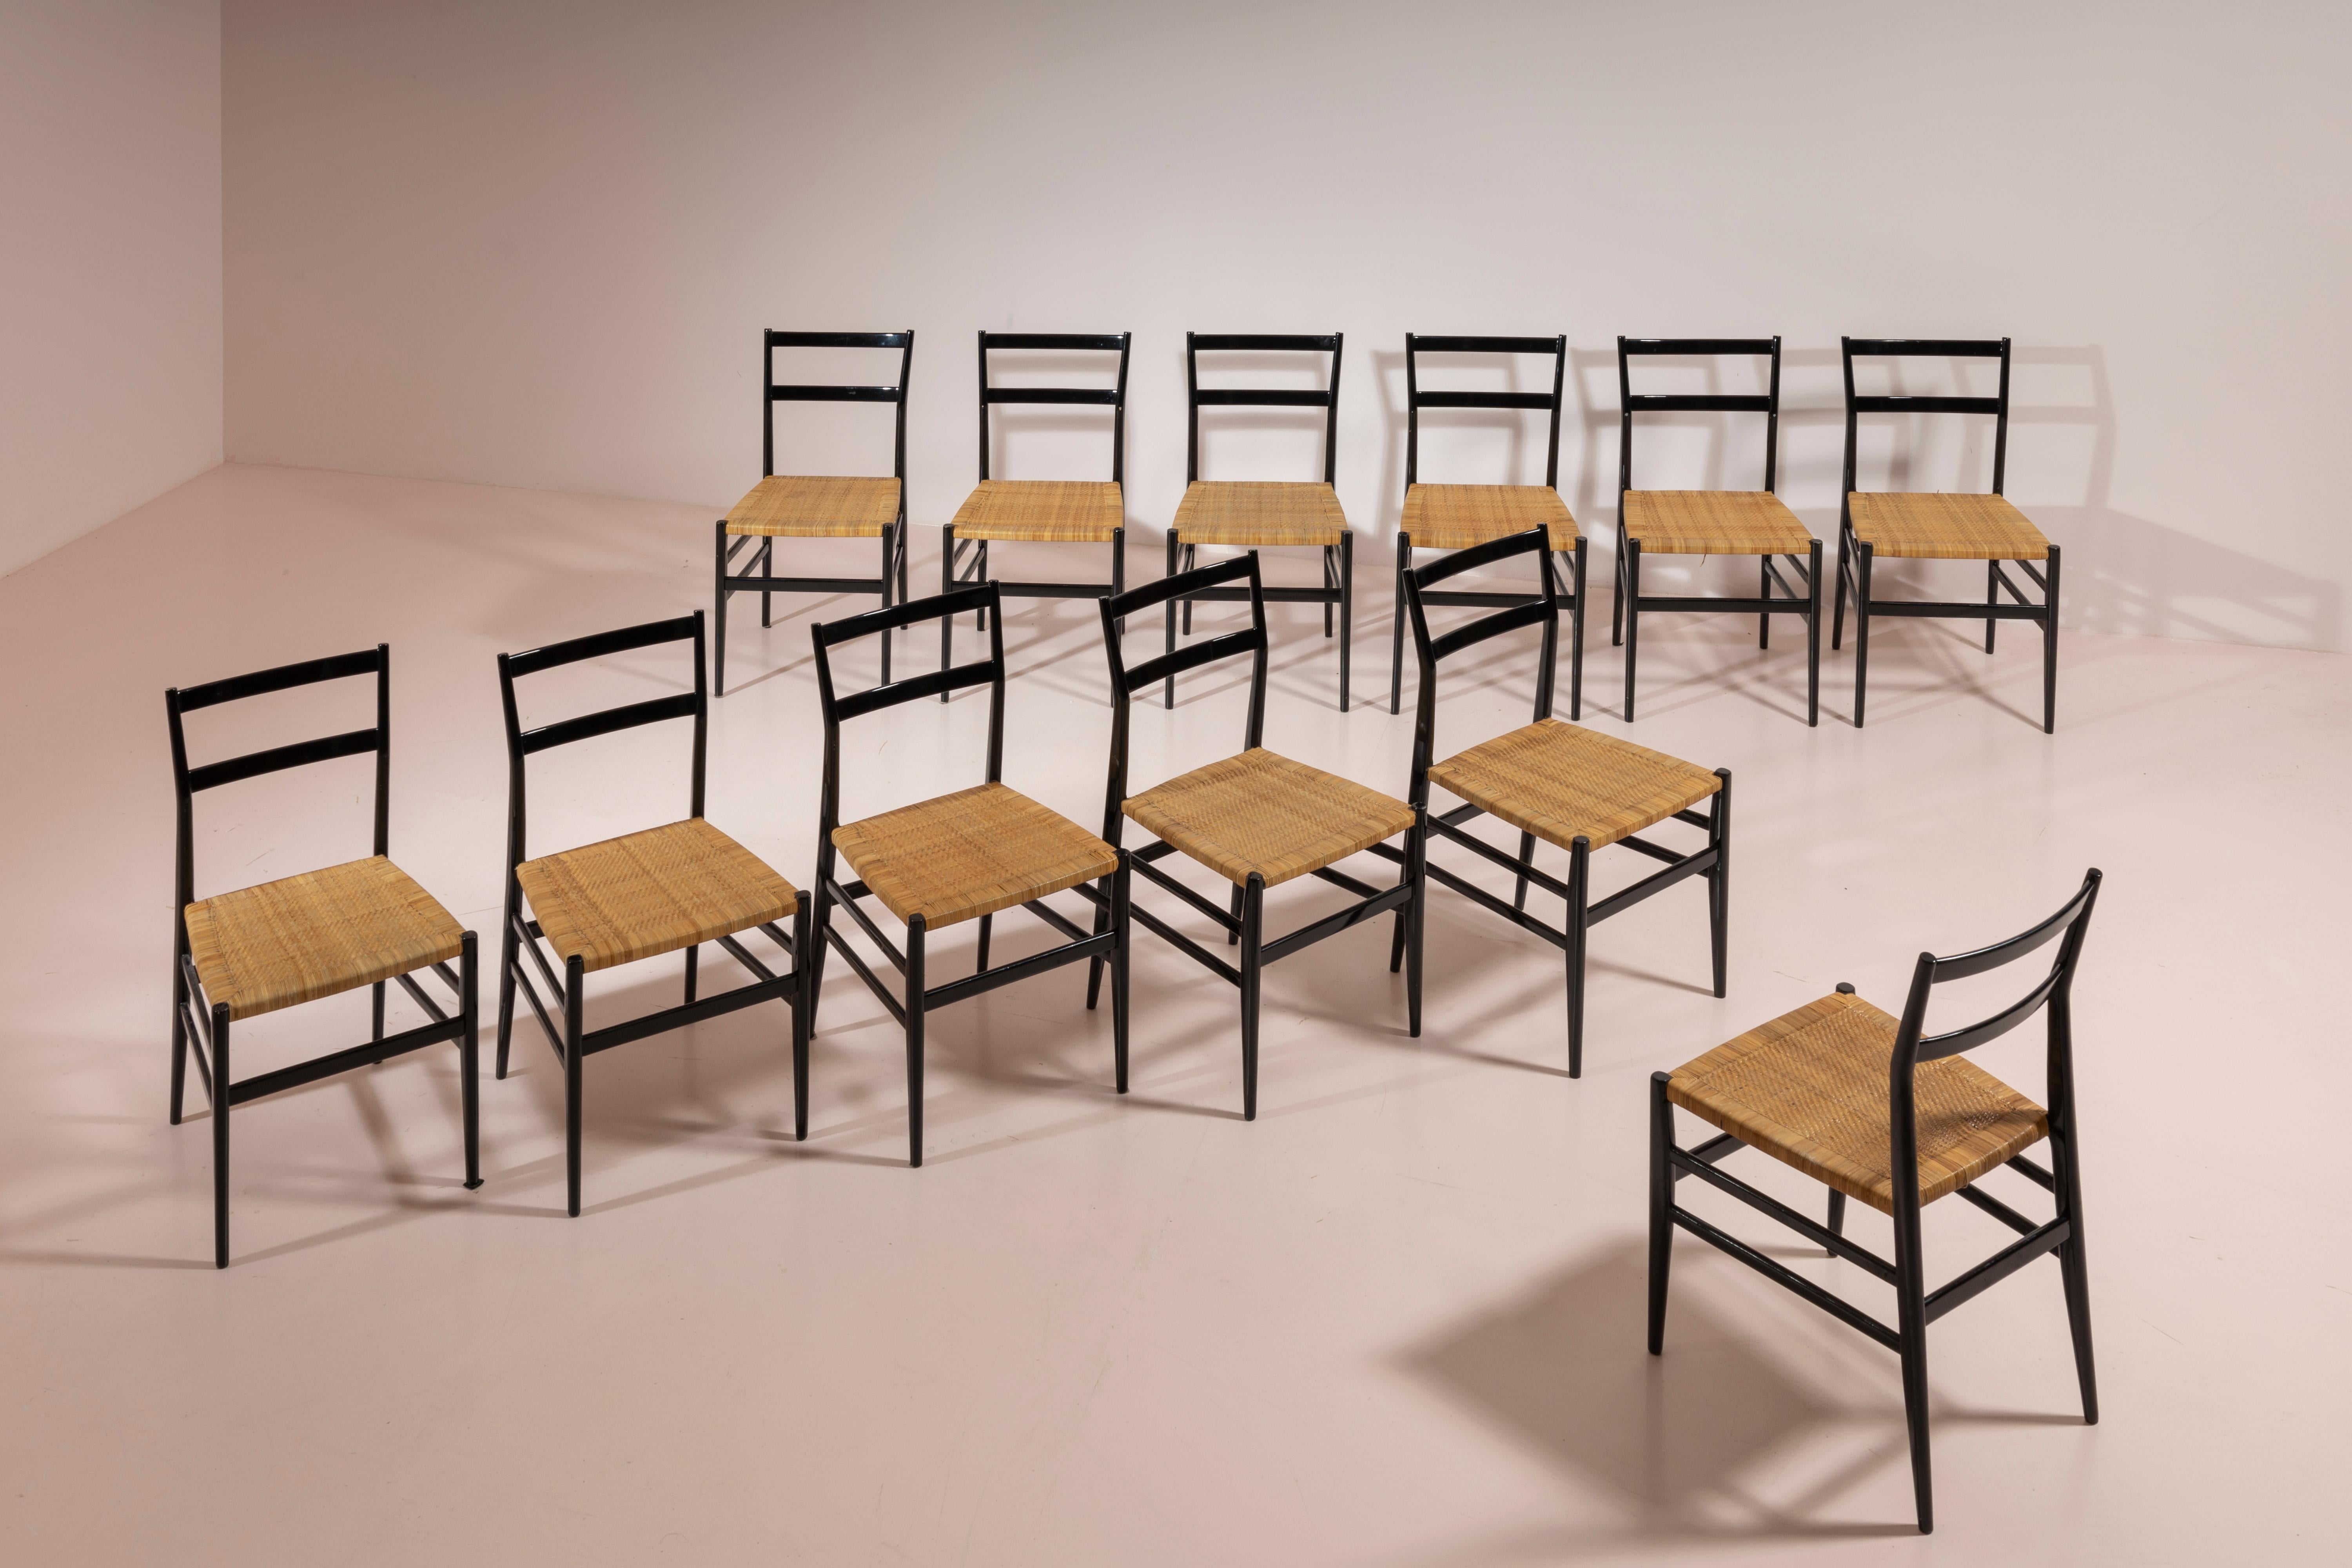 Ensemble de 12 chaises en frêne teinté noir avec cannage en rotin tressé à la main, conçues par Gio Ponti, modèle 646 Leggera, en 1951 et fabriquées par Figli di Amedeo Cassina à la fin des années 1950.

La chaise, conçue par Gio Ponti en 1951, est